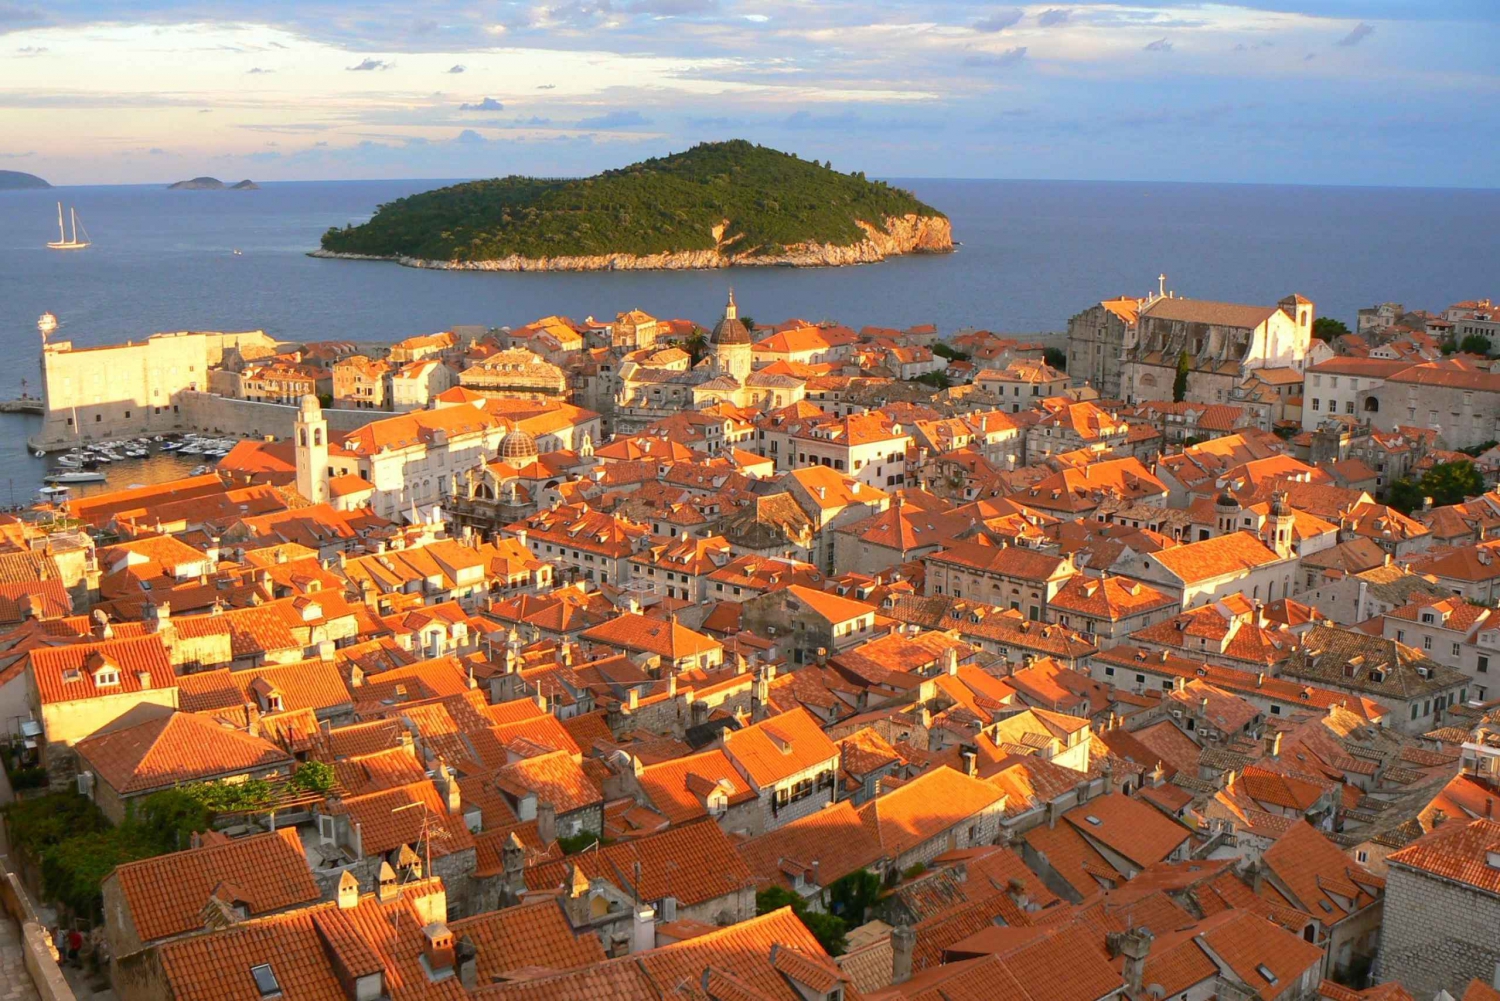 Dubrovnik: Passeio a pé pelas muralhas da cidade